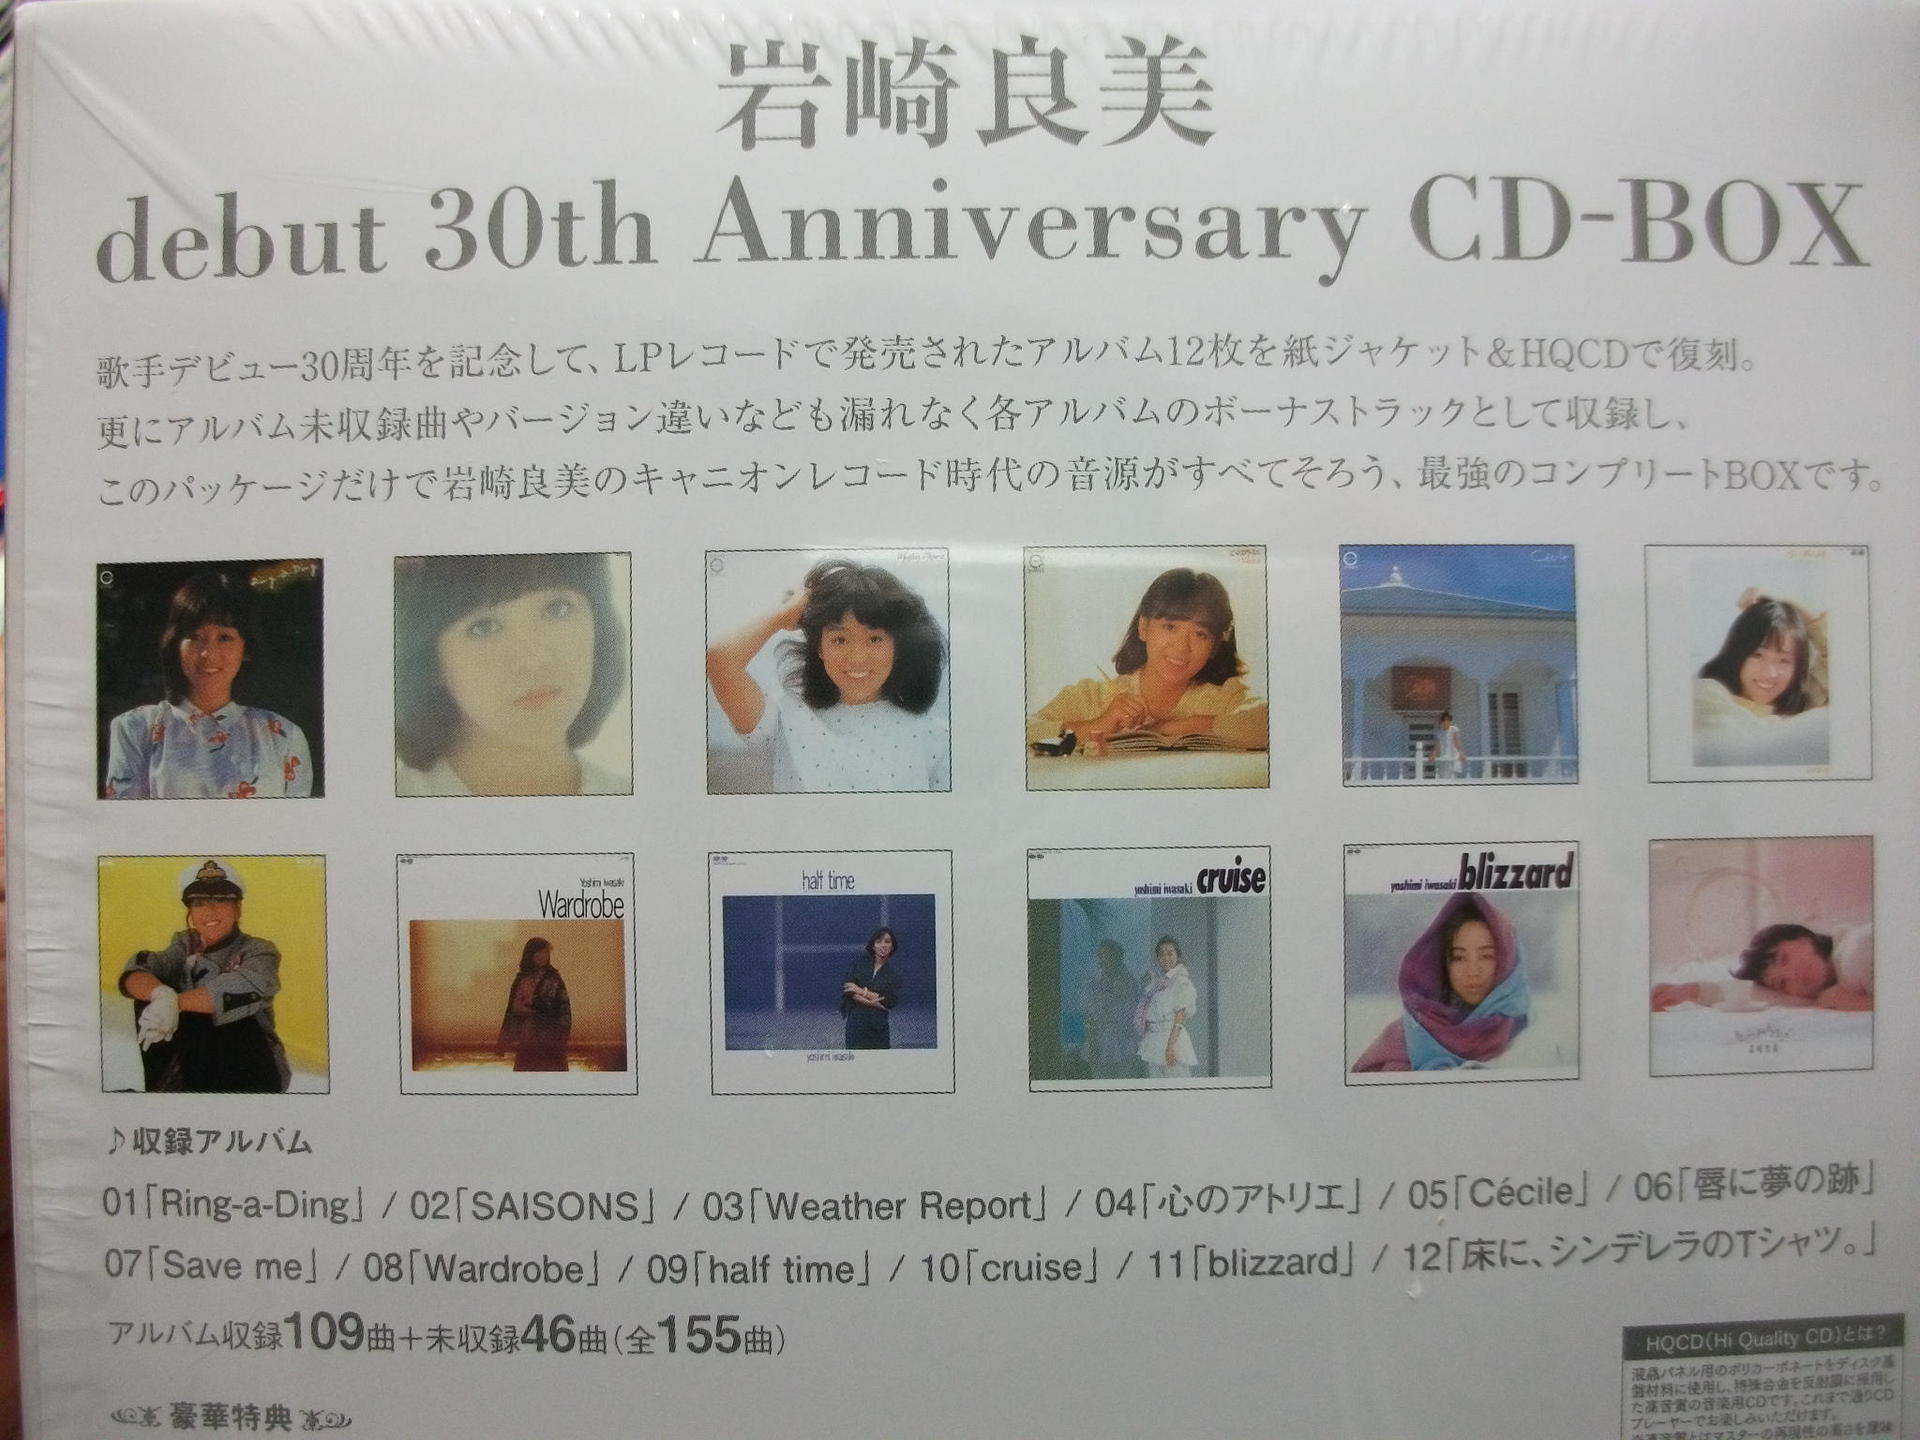 売れ筋アイテムラン 岩崎良美 debut CD-BOX Anniversary 30th 邦楽